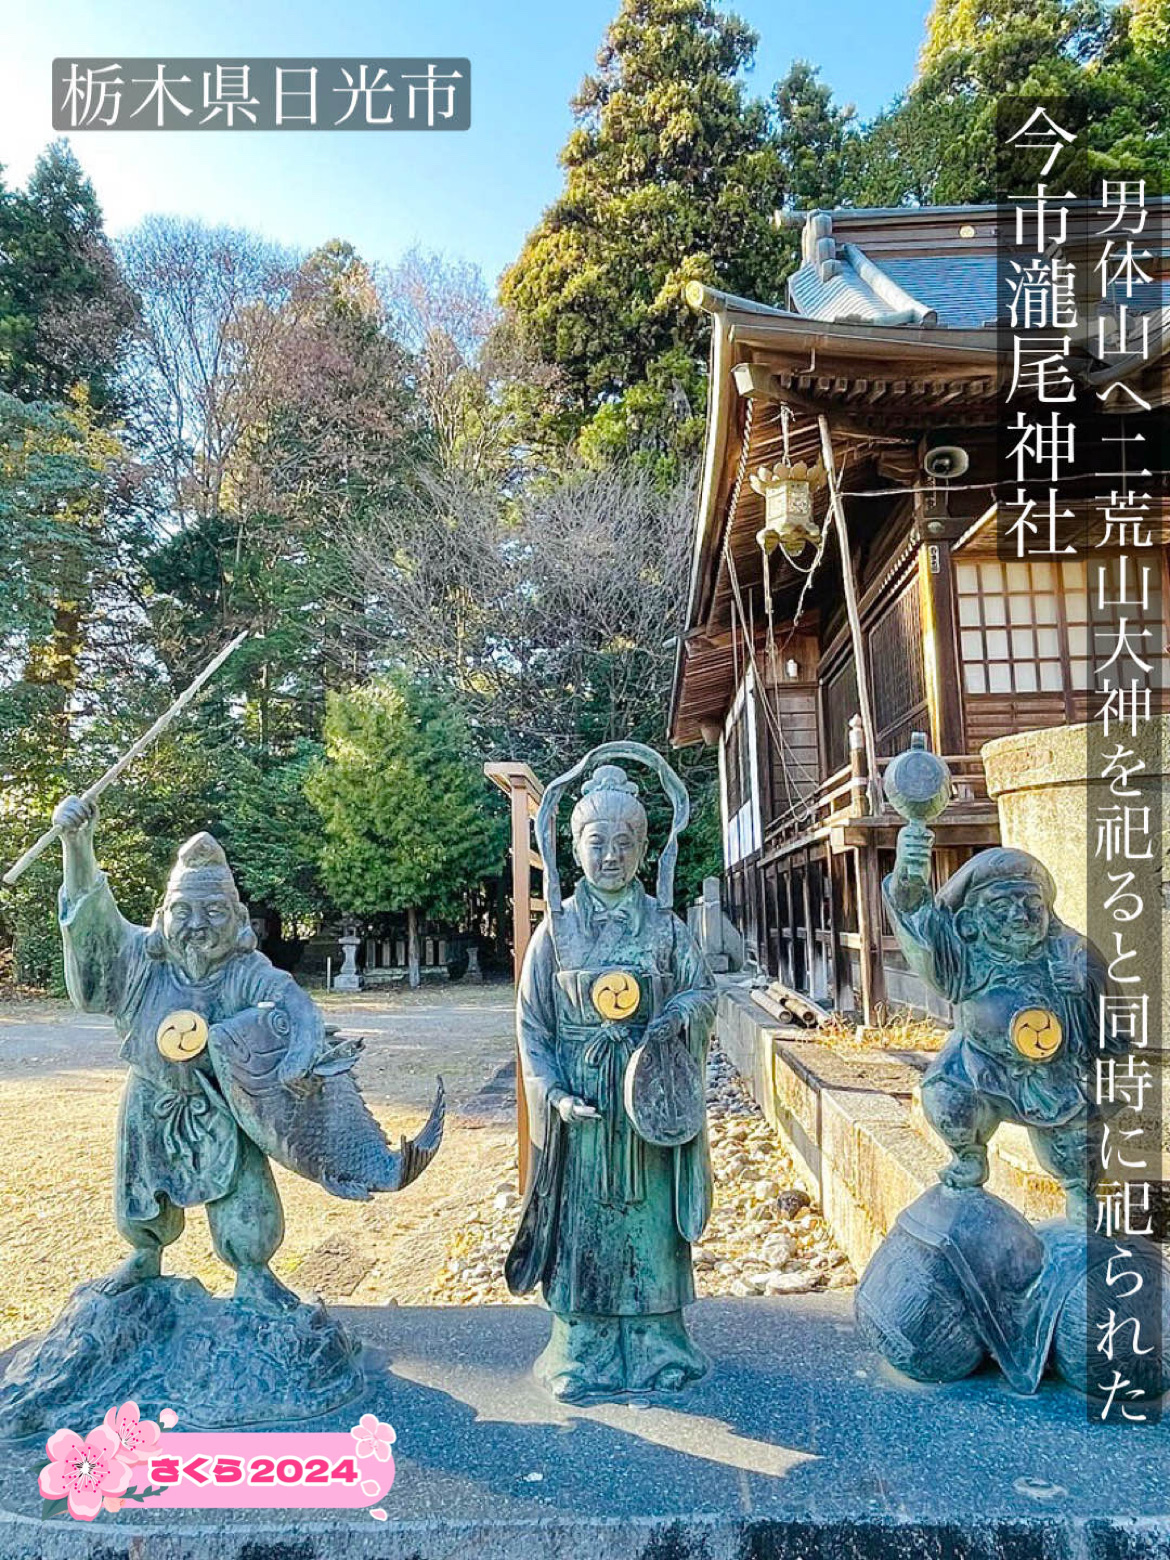 【今市尾神社/栃木县】在男体山祭祀二荒山大神的同时祭祀的神社